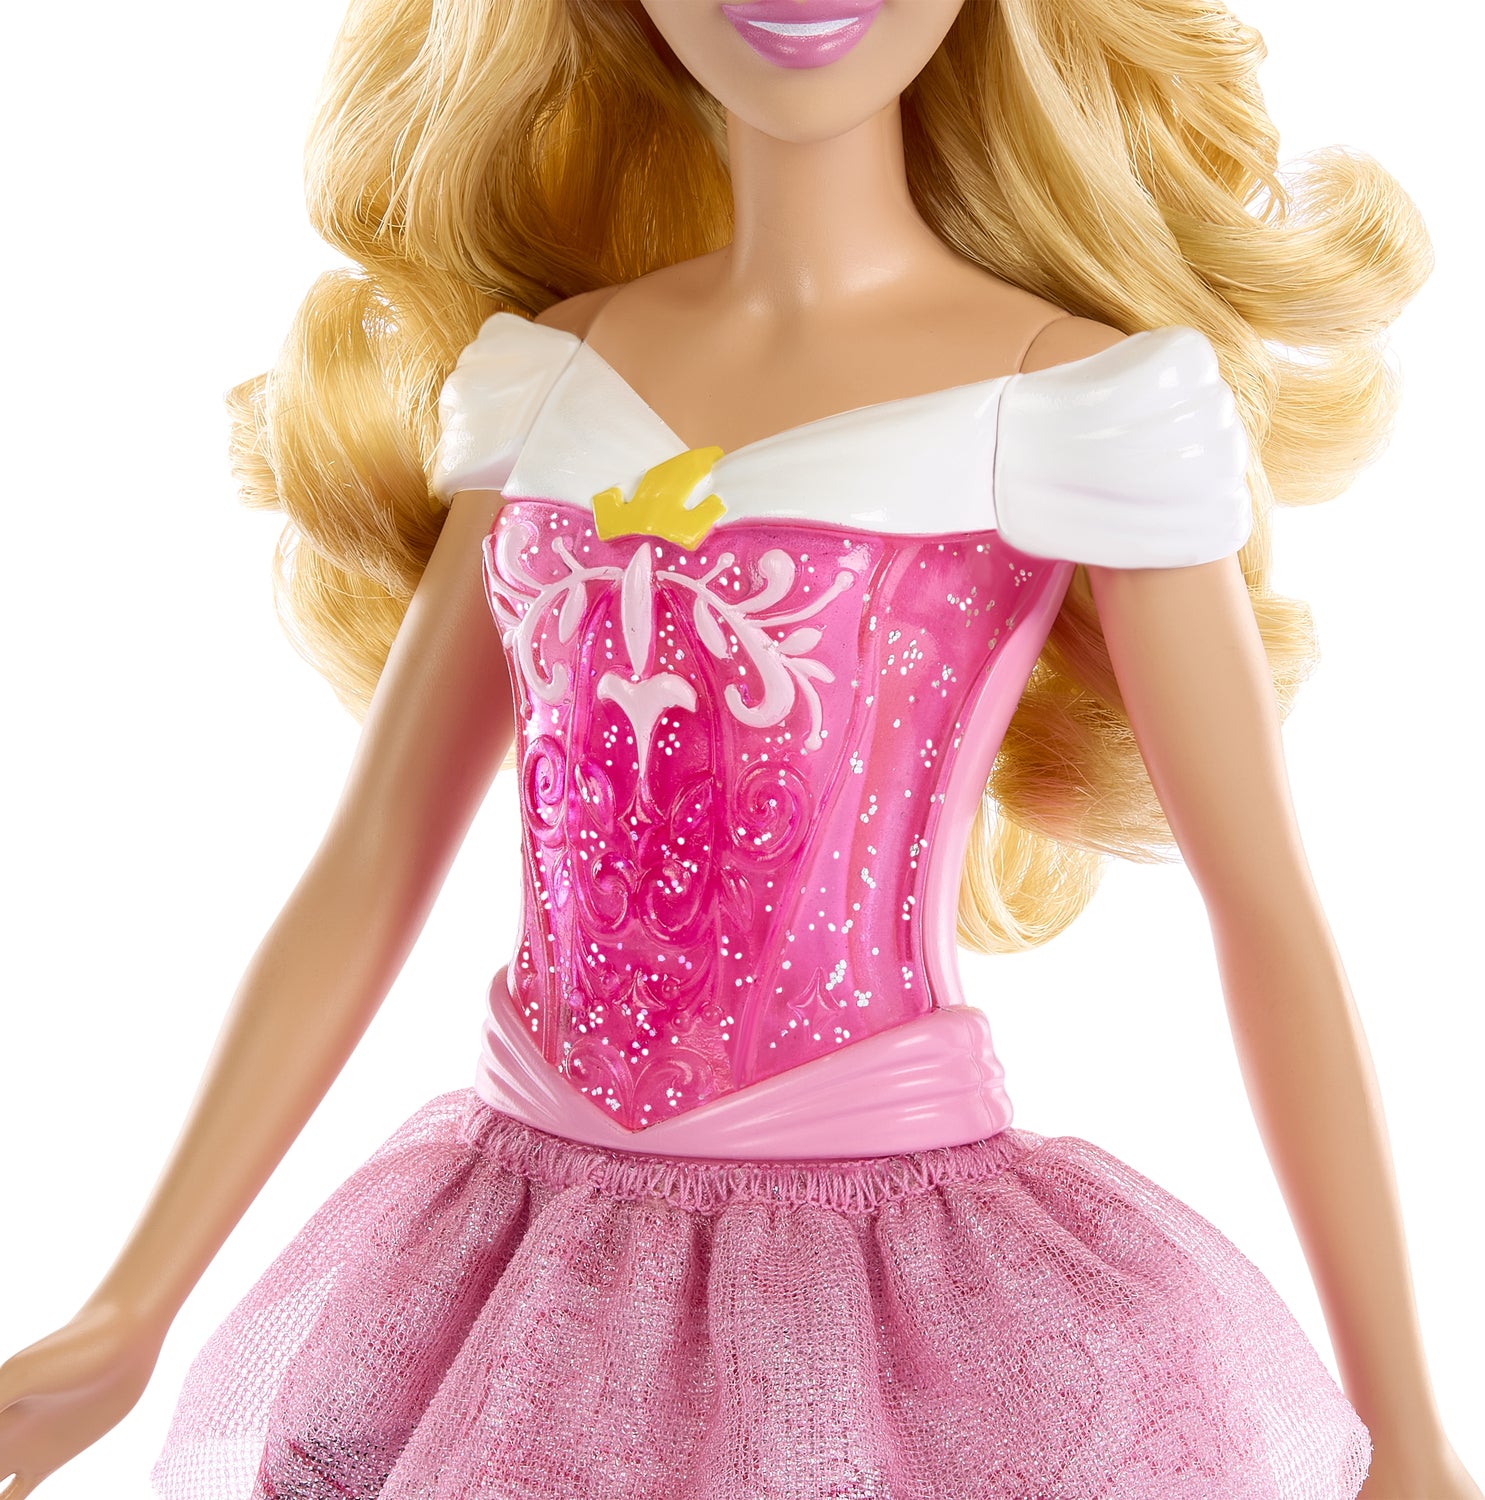 Disney Aurora Doll 29 cm